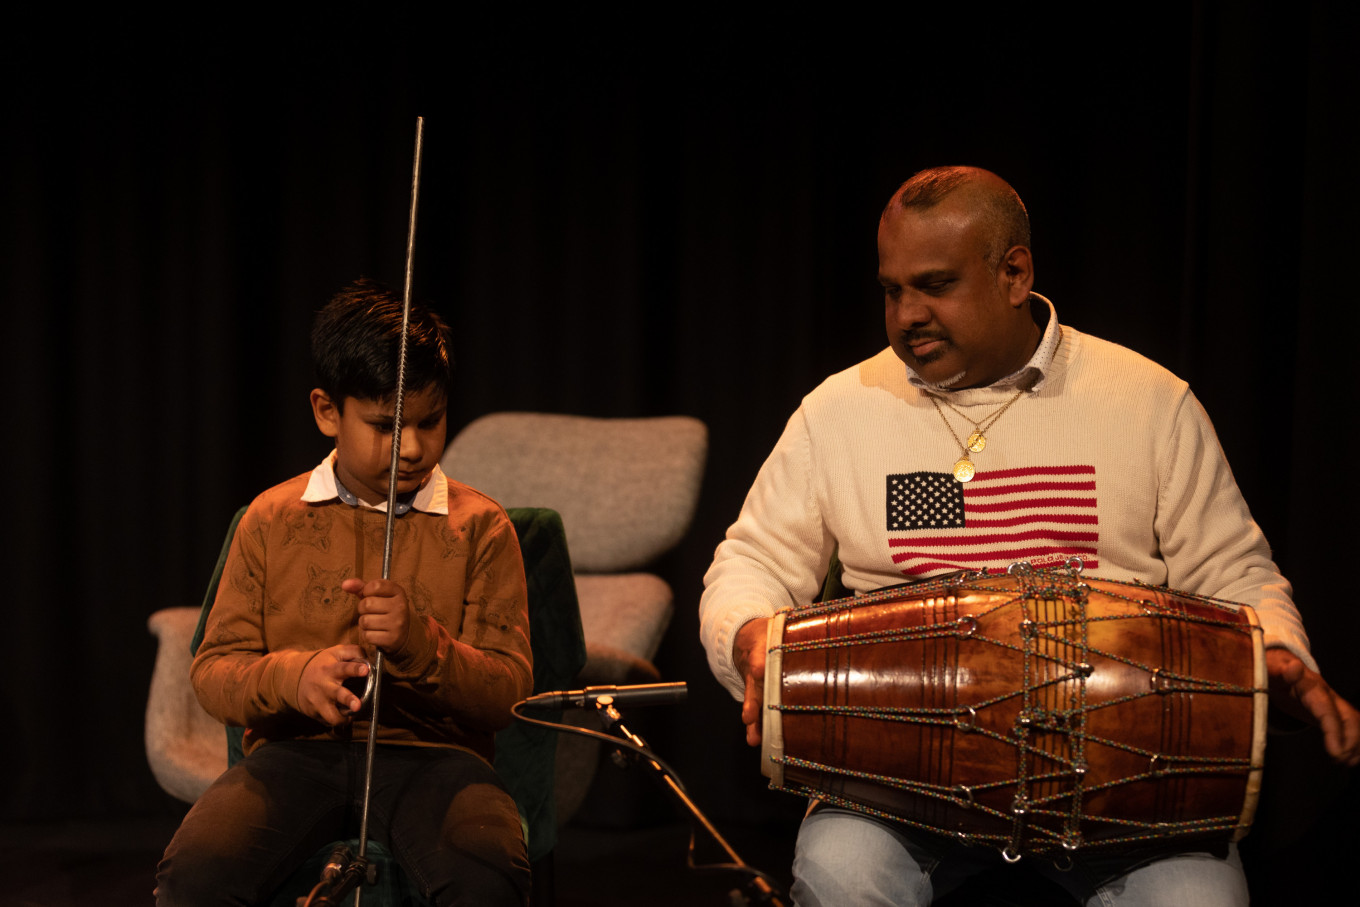 Muzikaal intermezzo door (ex)deelnemer Aniel met zijn zoon  